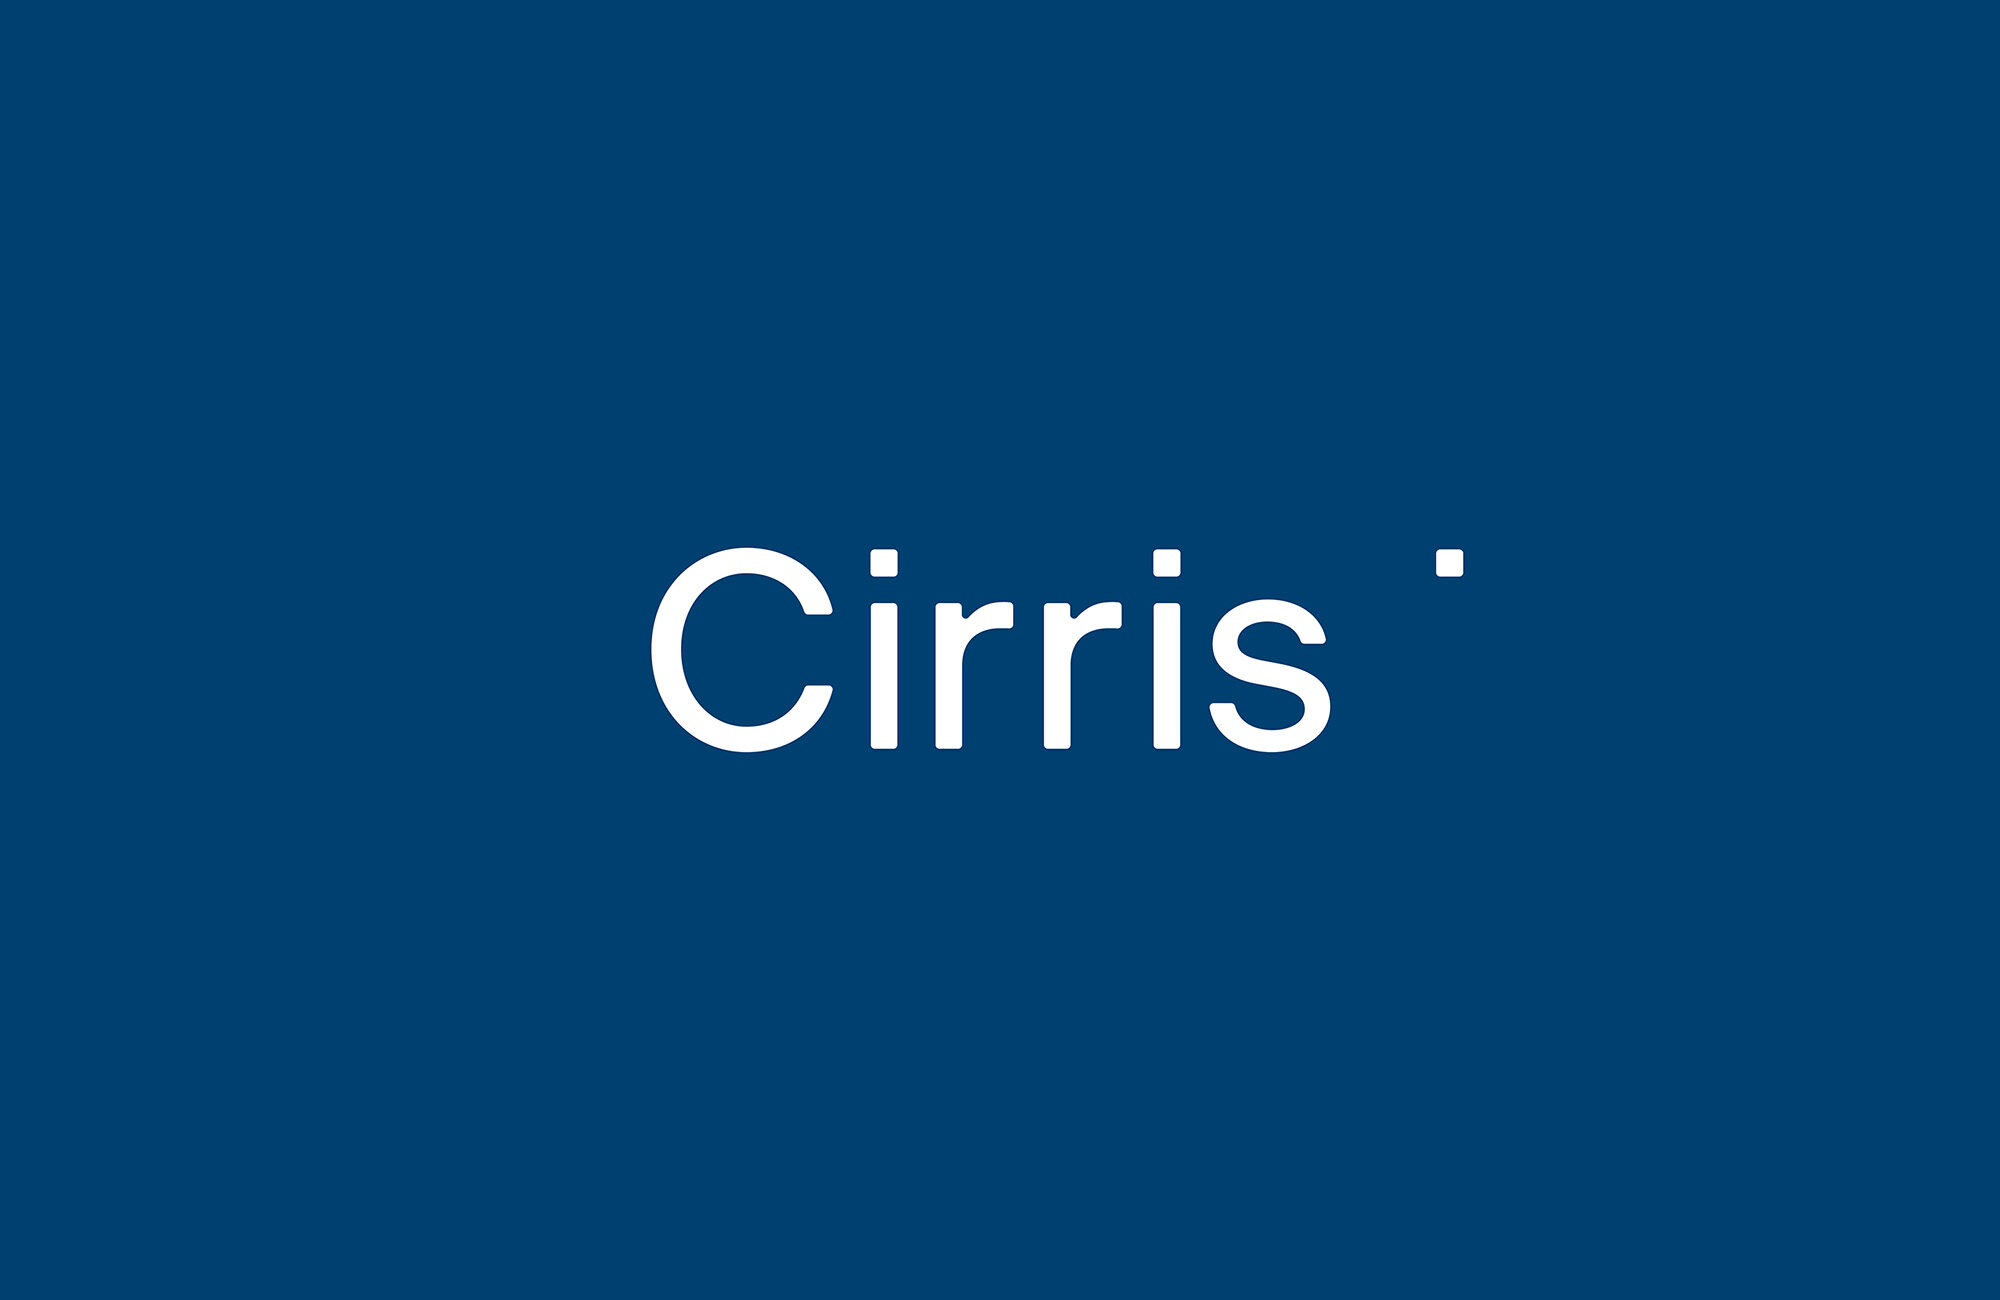 Cirris